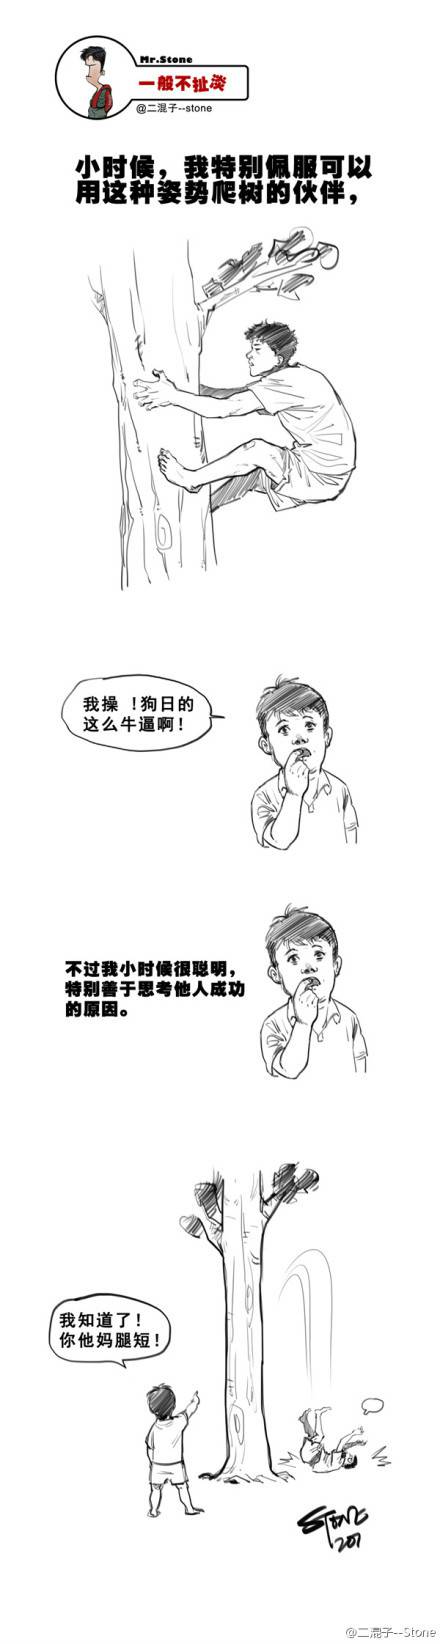 邪恶漫画爆笑囧图第330刊：西瓜妹